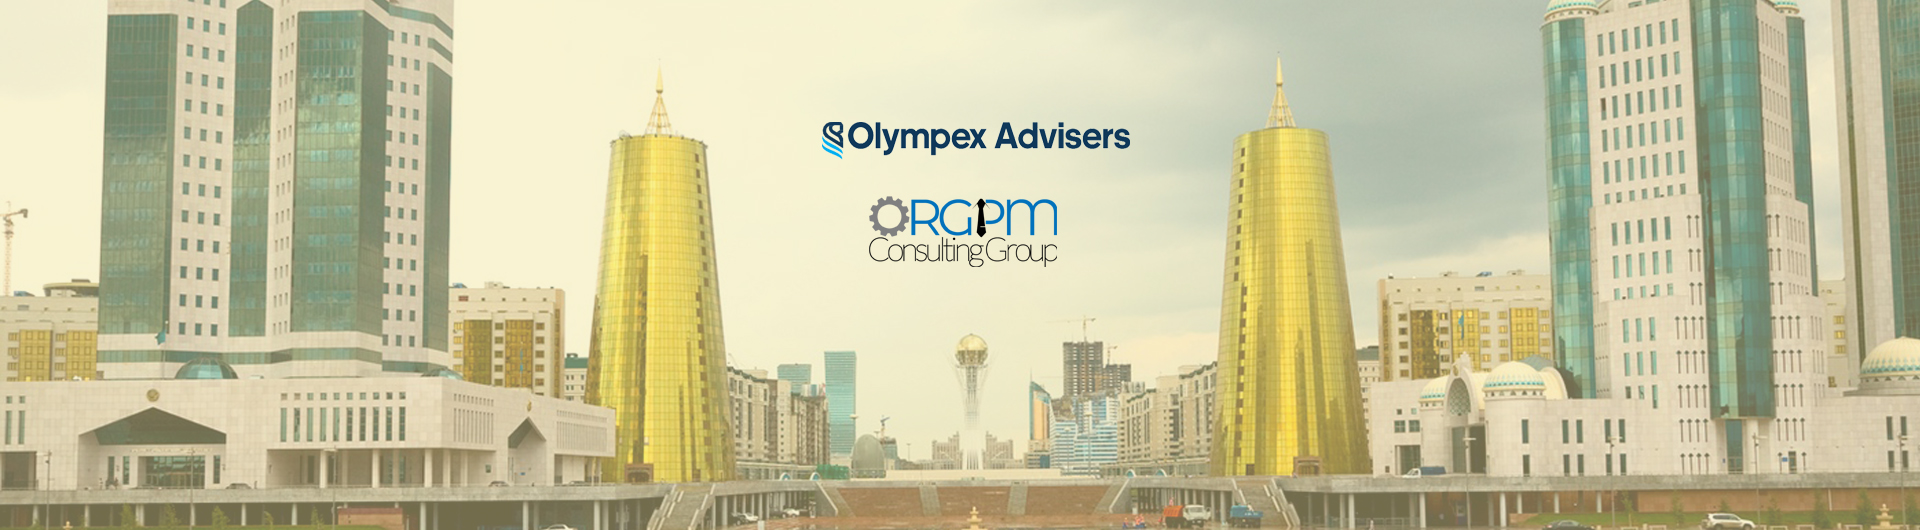 ORGPM CG открывает представительство в Казахстане